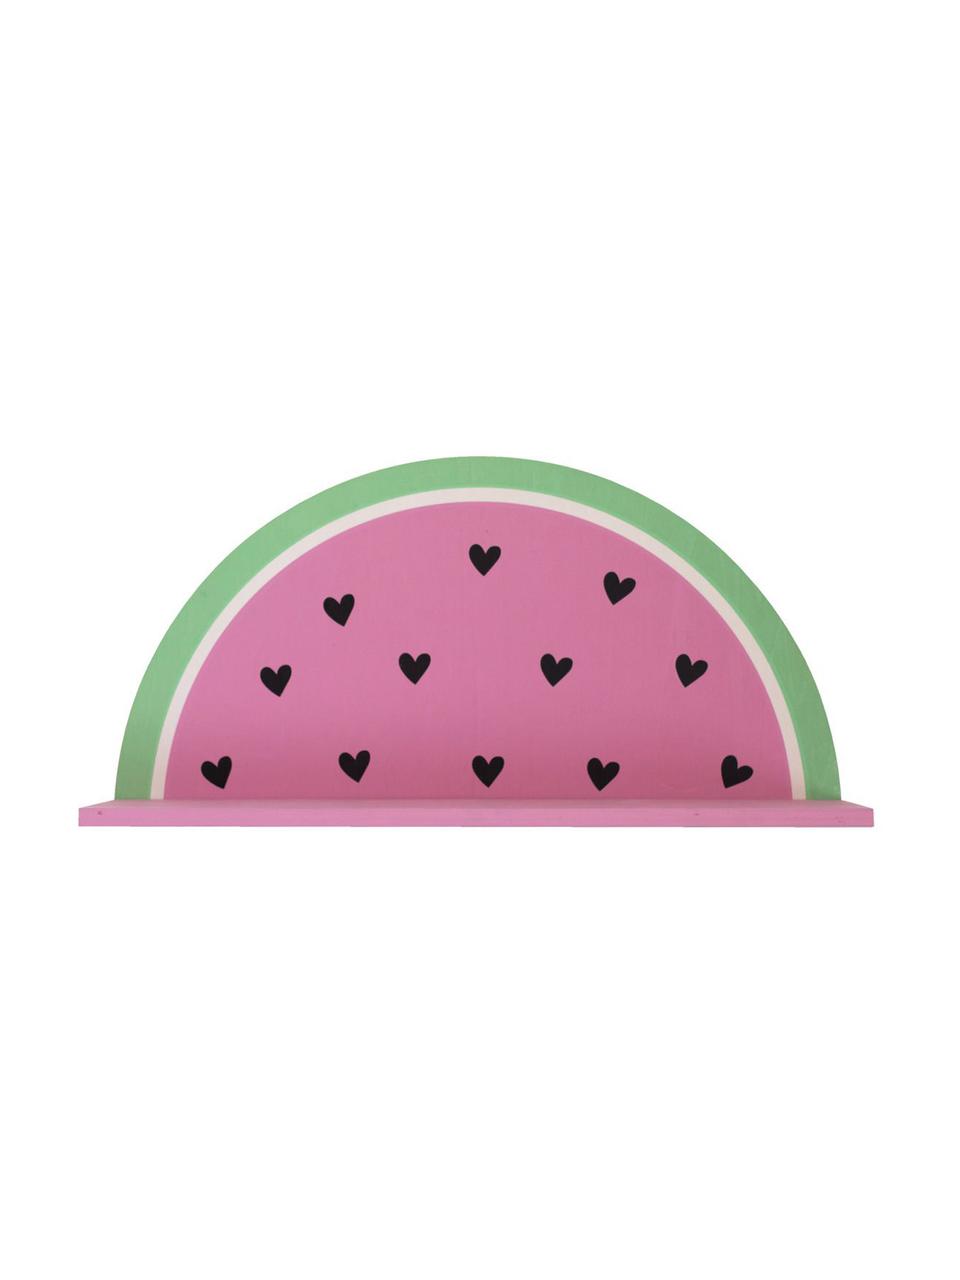 Wandregal Watermelon, Holz, beschichtet, Pink, Grün, Schwarz, Weiss, 37 x 19 cm